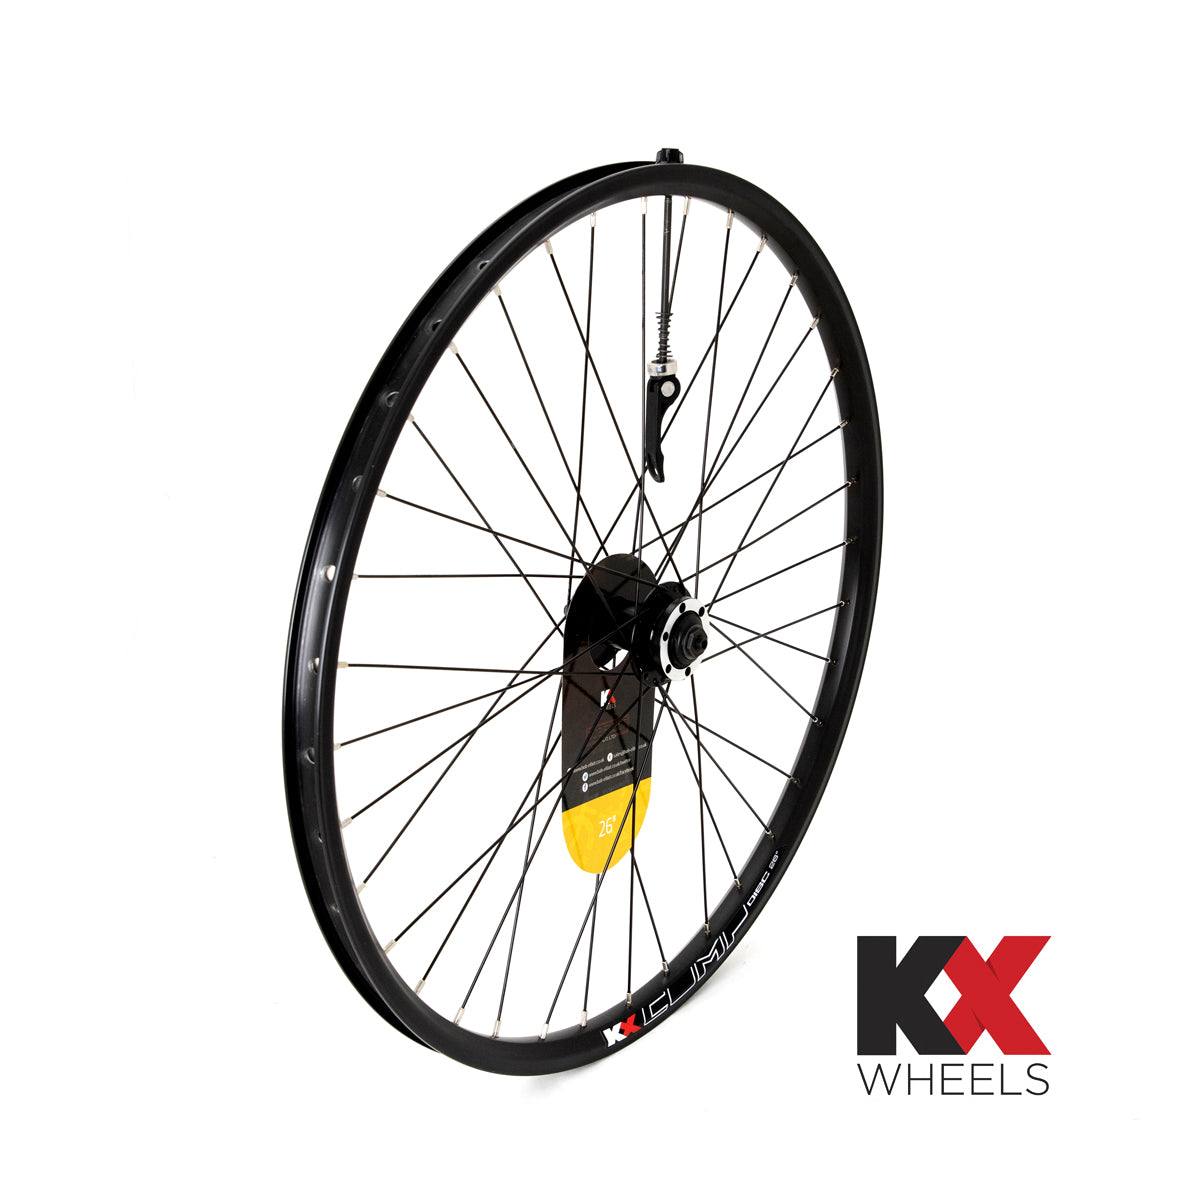 KX Wheels Double Wall QR Disc 26 Inch Front Bike Wheel Black